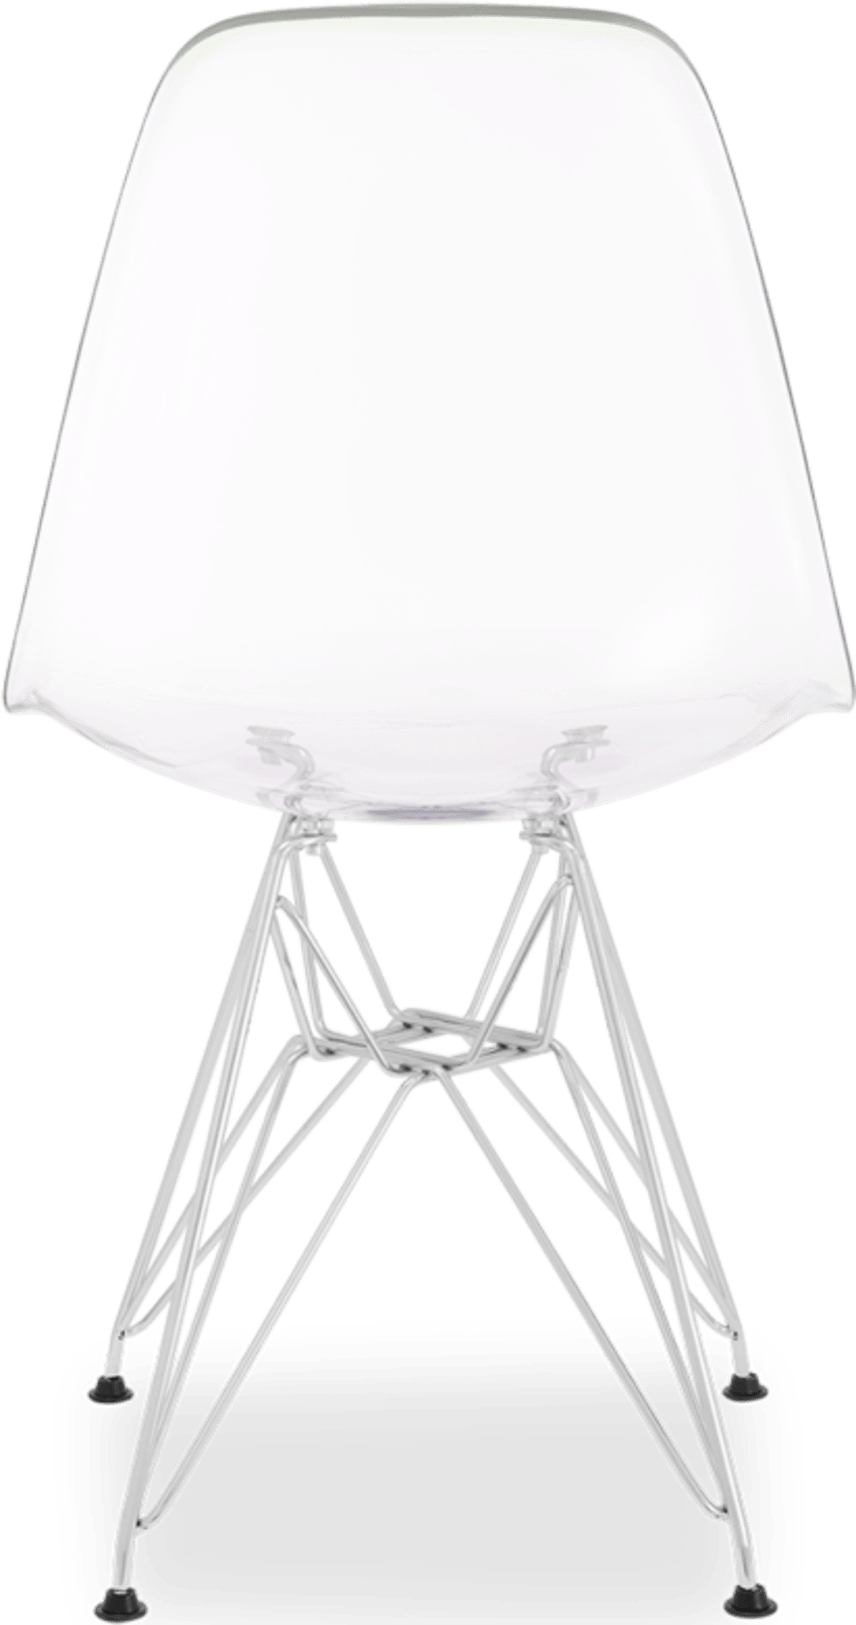 Gjennomsiktig stol i DSR-stil Clear image.